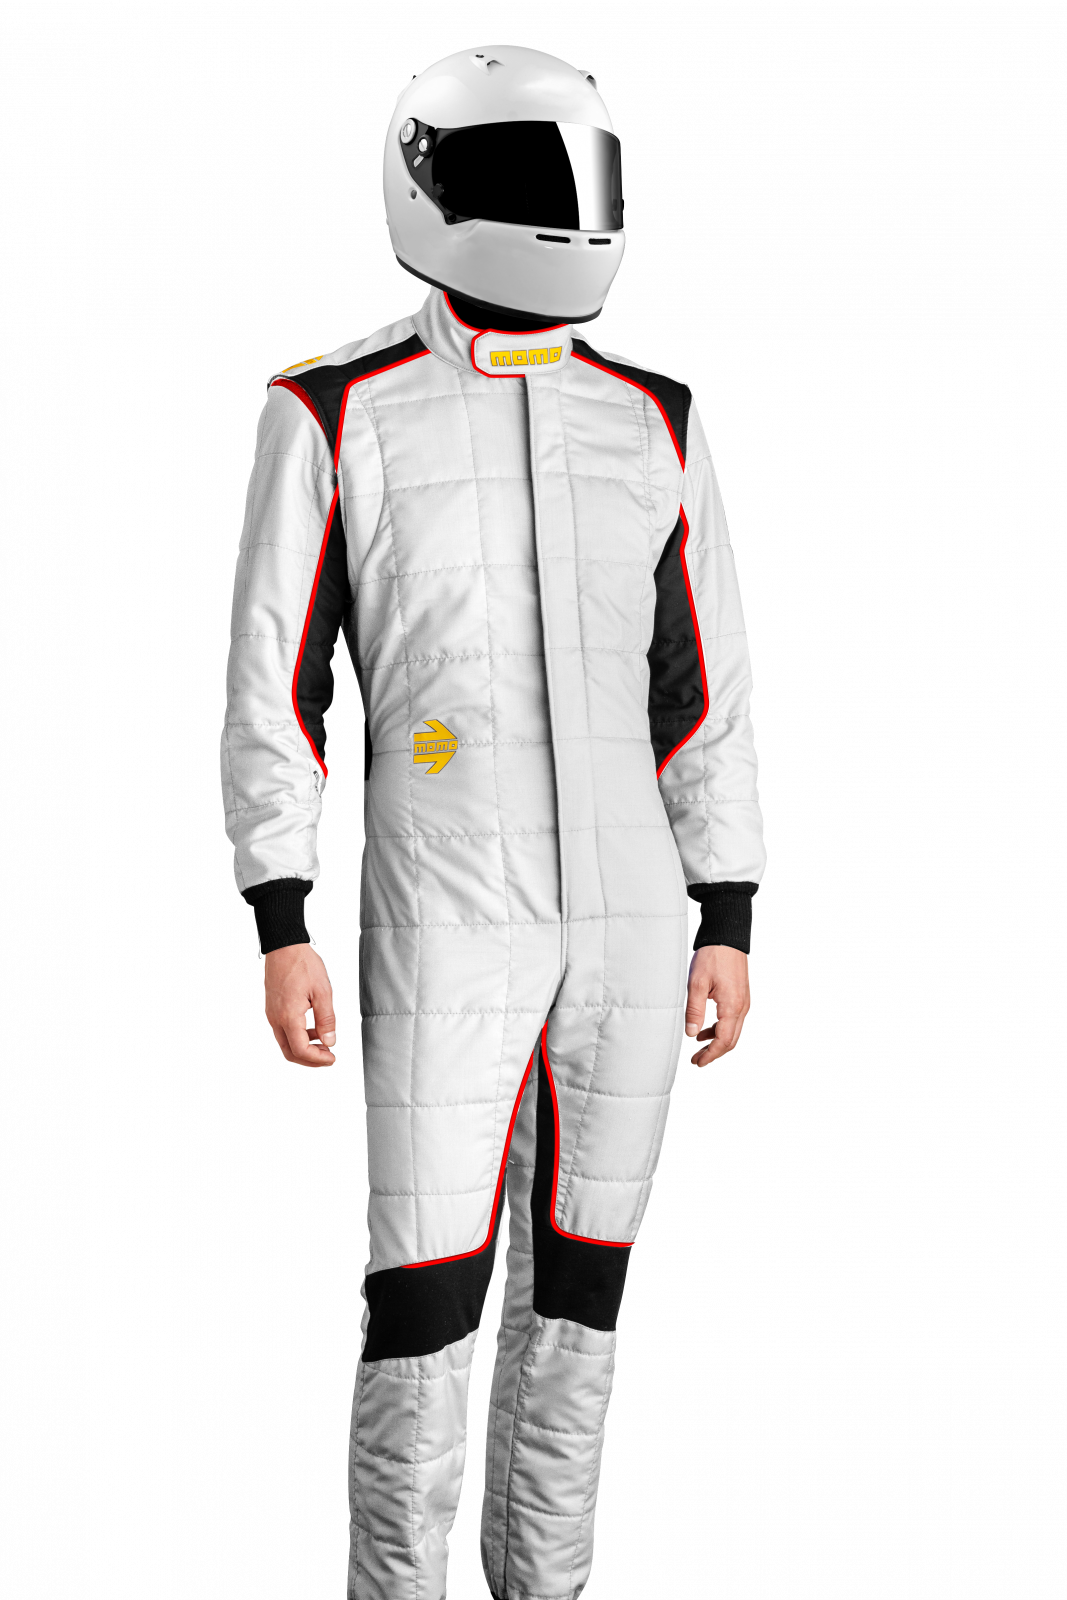 MOMO Corsa Evo White Size 54 Racing Suit TUCOEVOWHT54